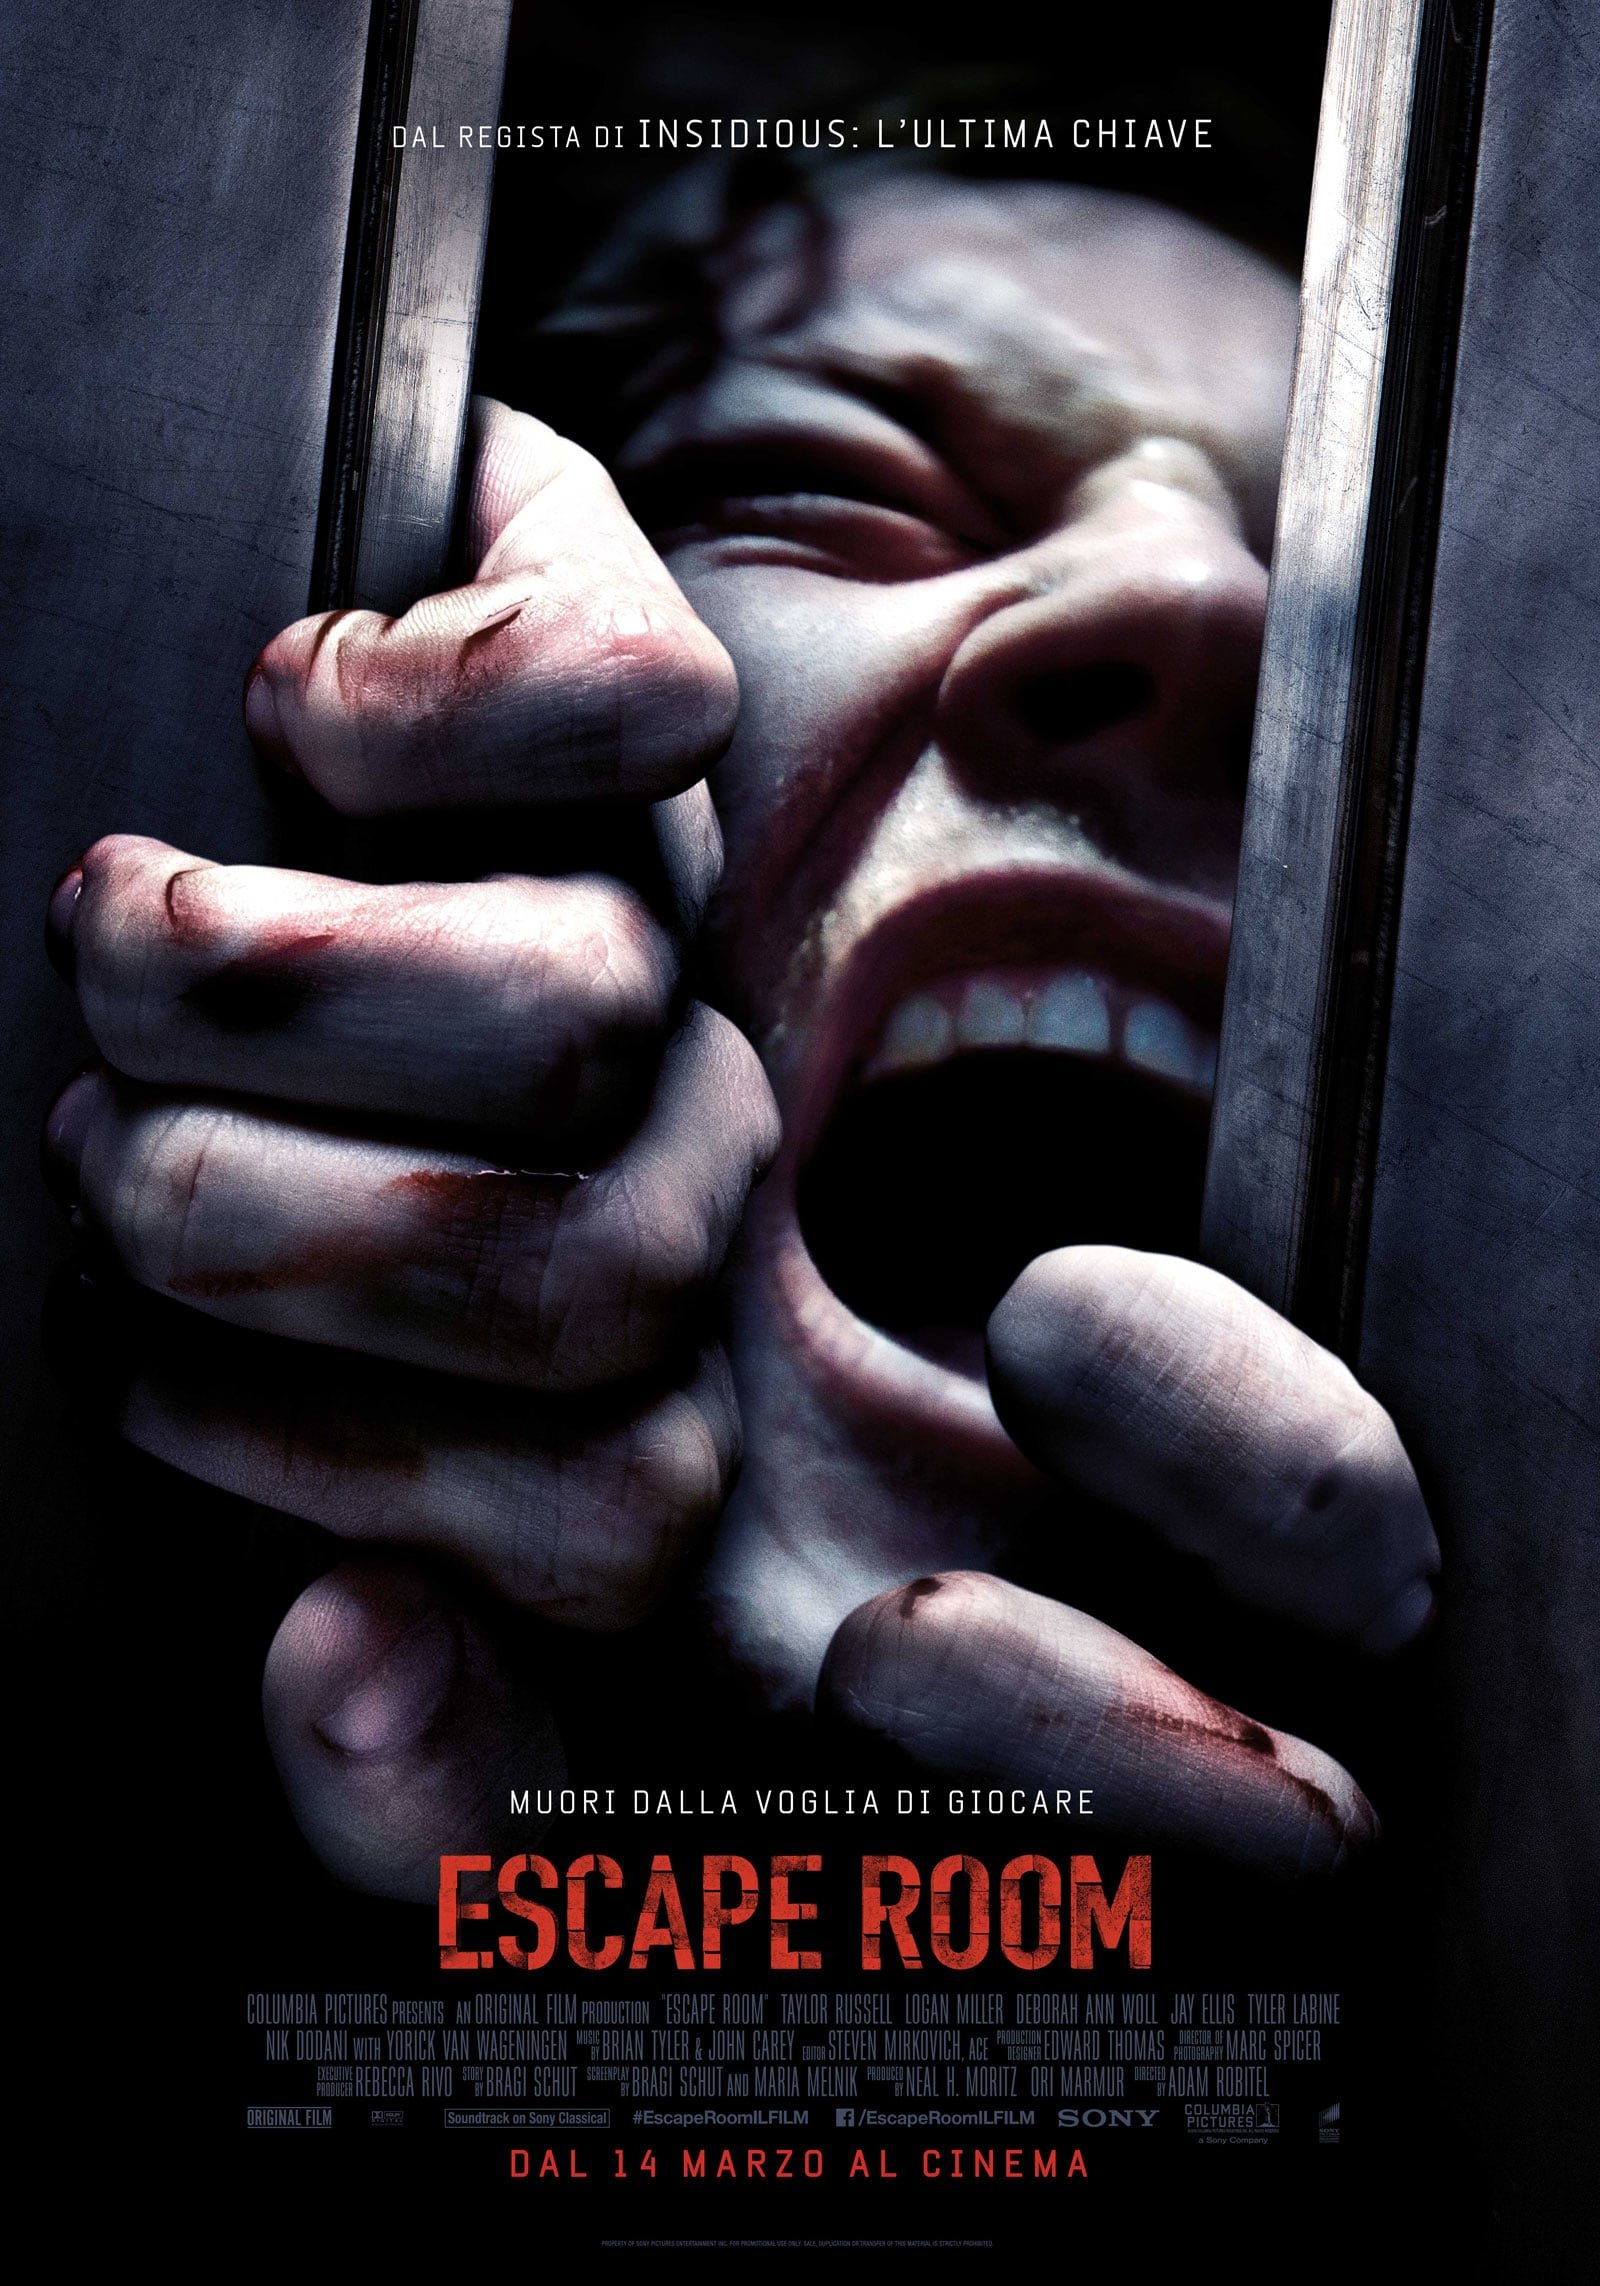 Escape Room (2019) Streaming, Trailer, Trama, Cast, Citazioni